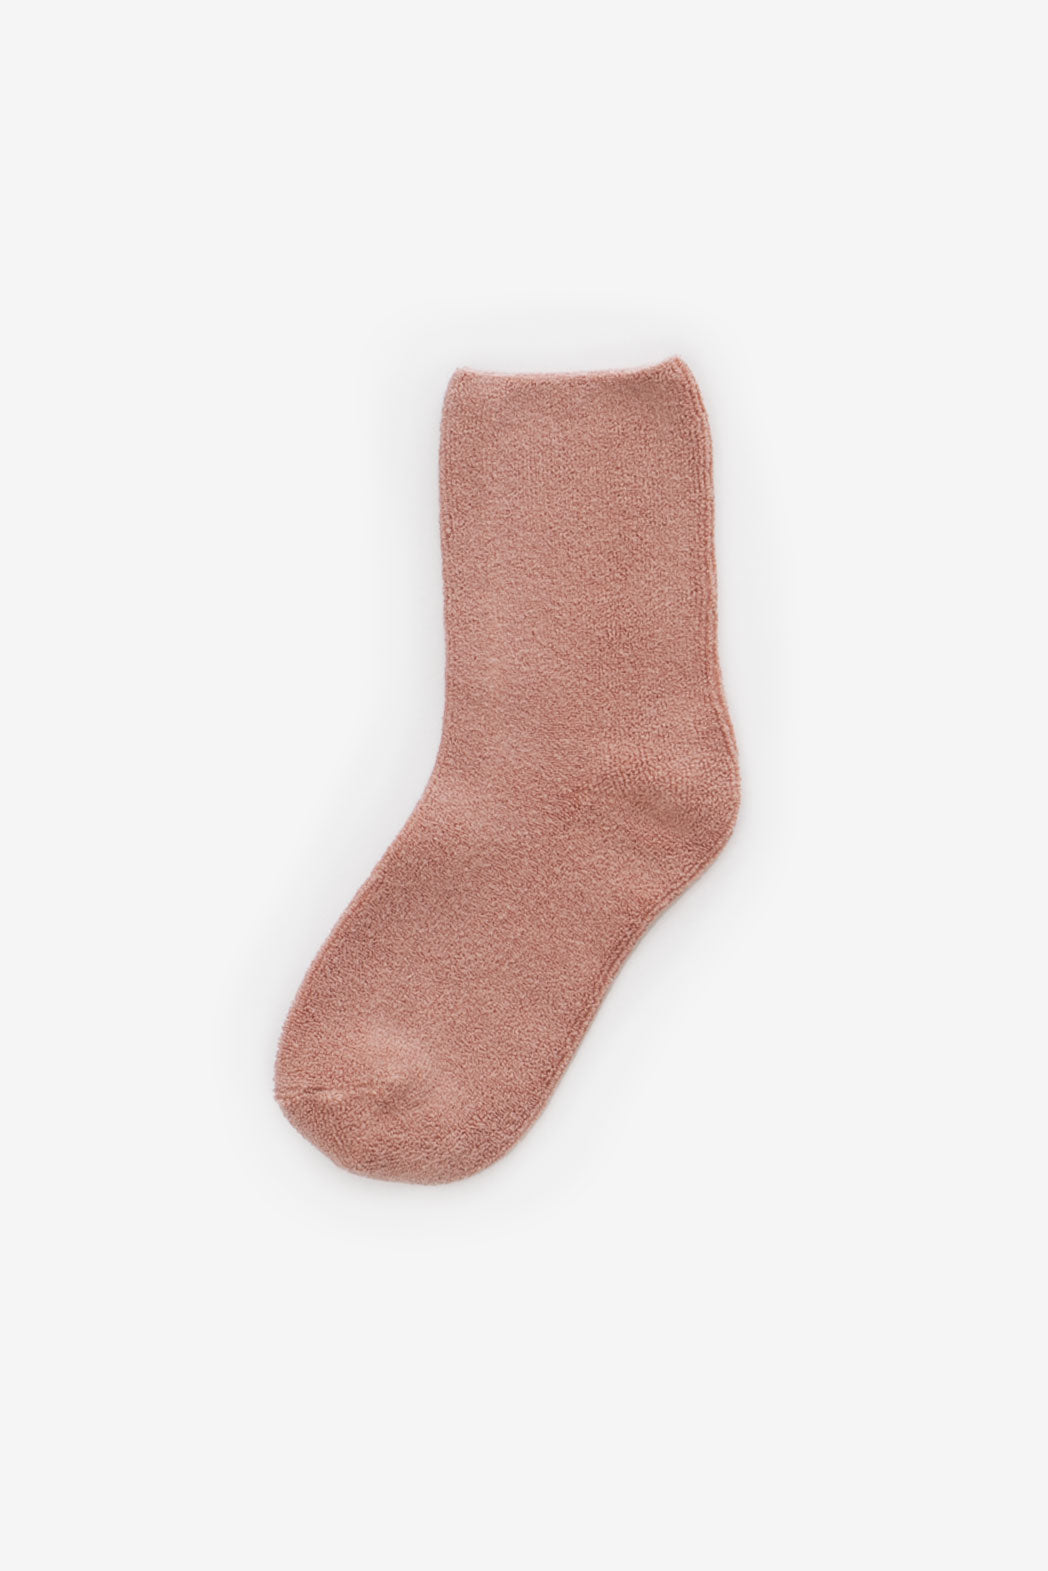 Le Bon Cloud Socks / Mulberry